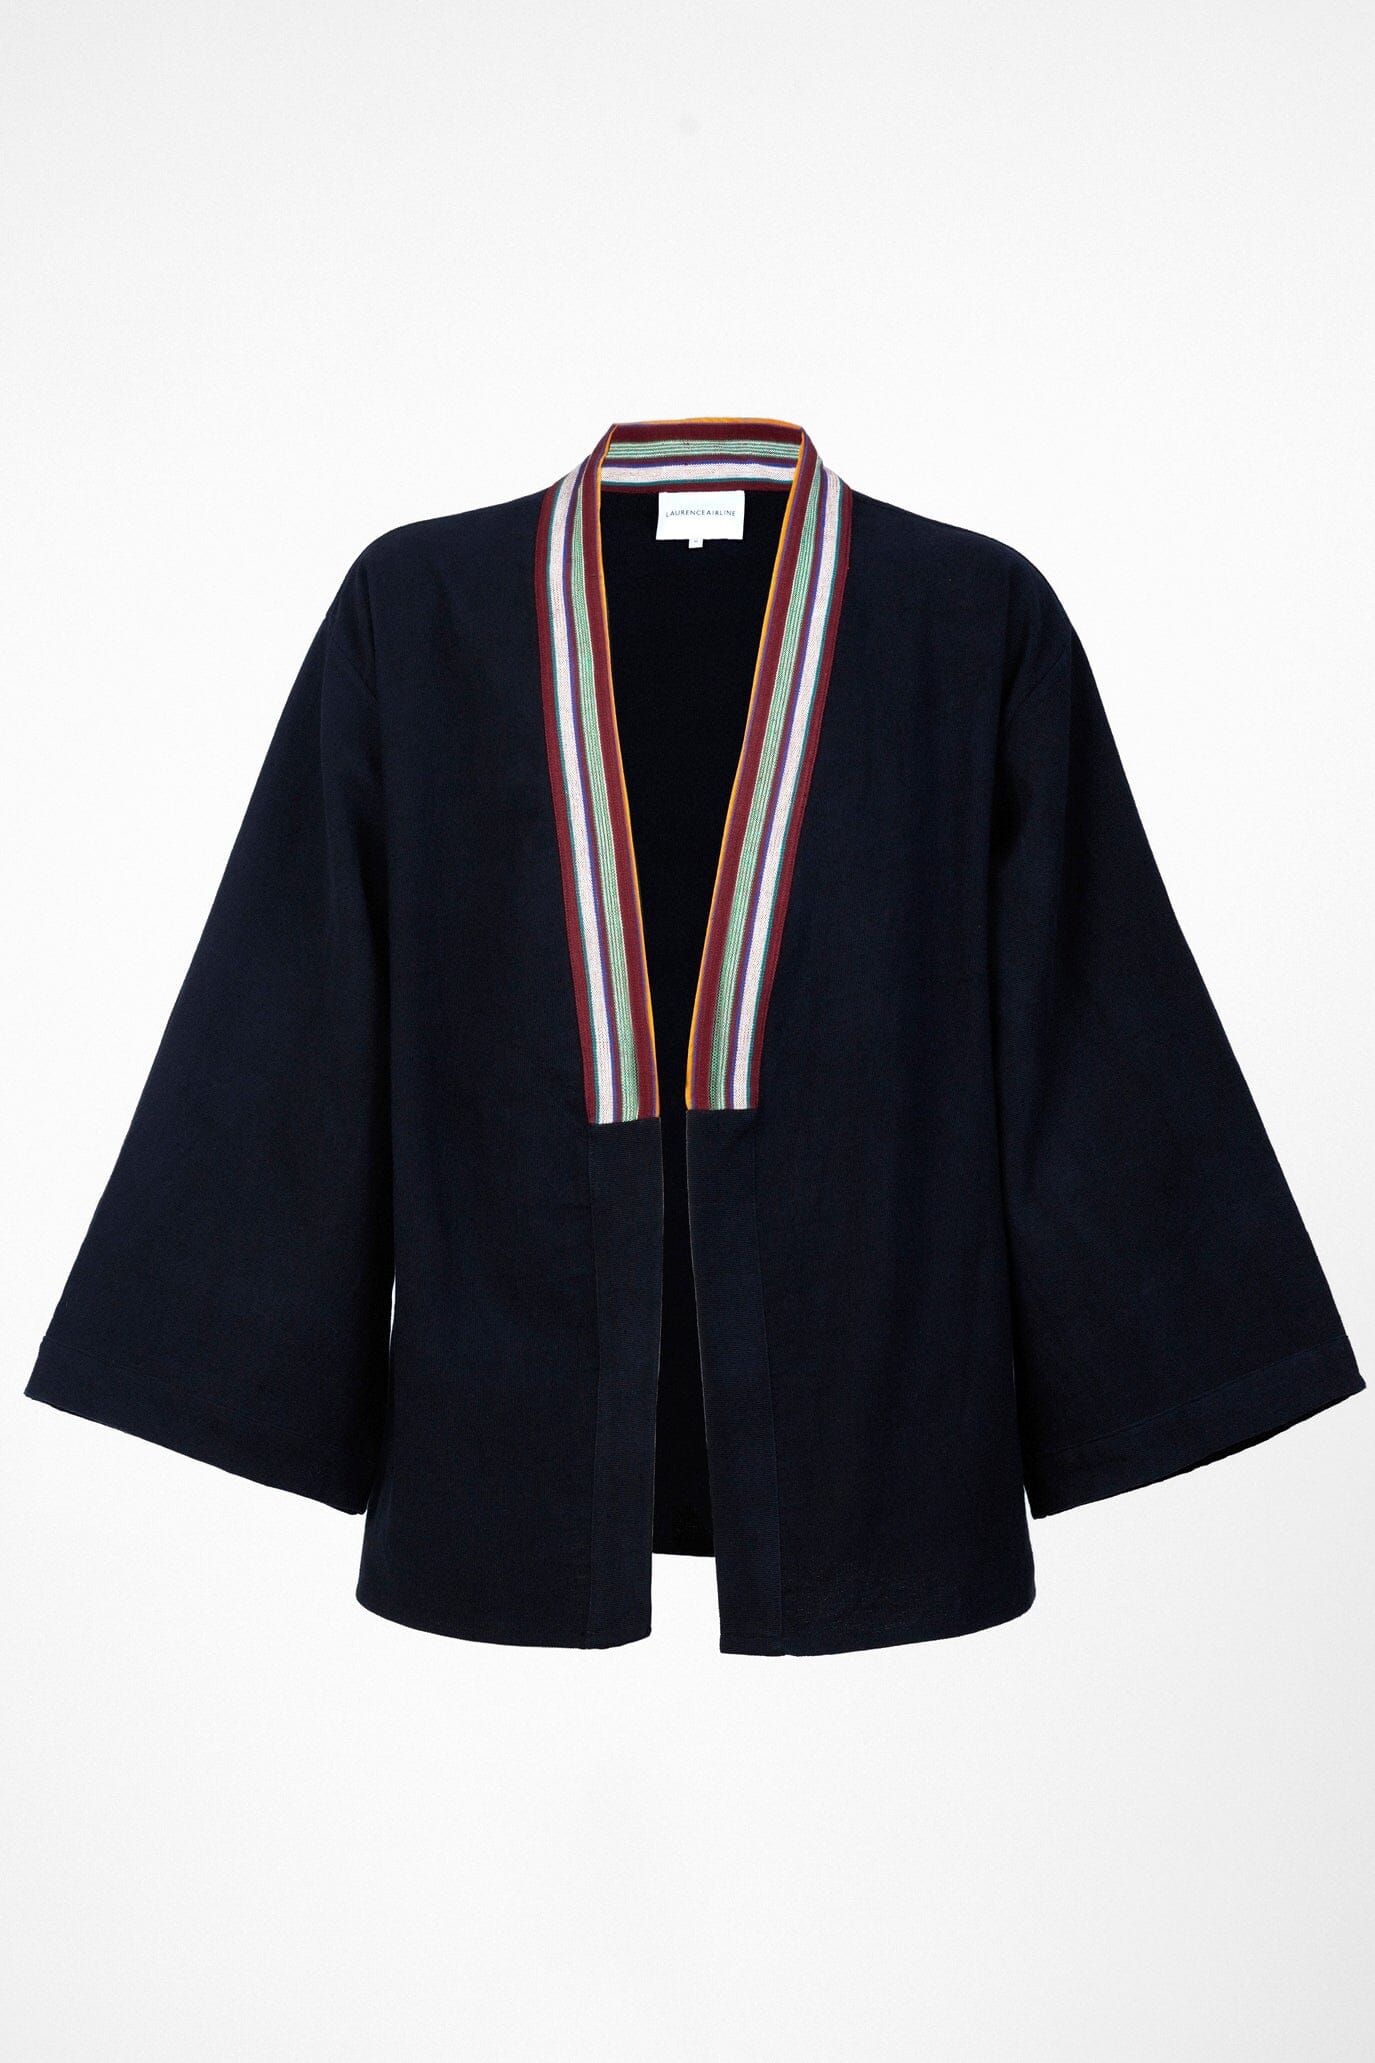 Kimono-style jacket Kimono Jacket New LaurenceAirline 